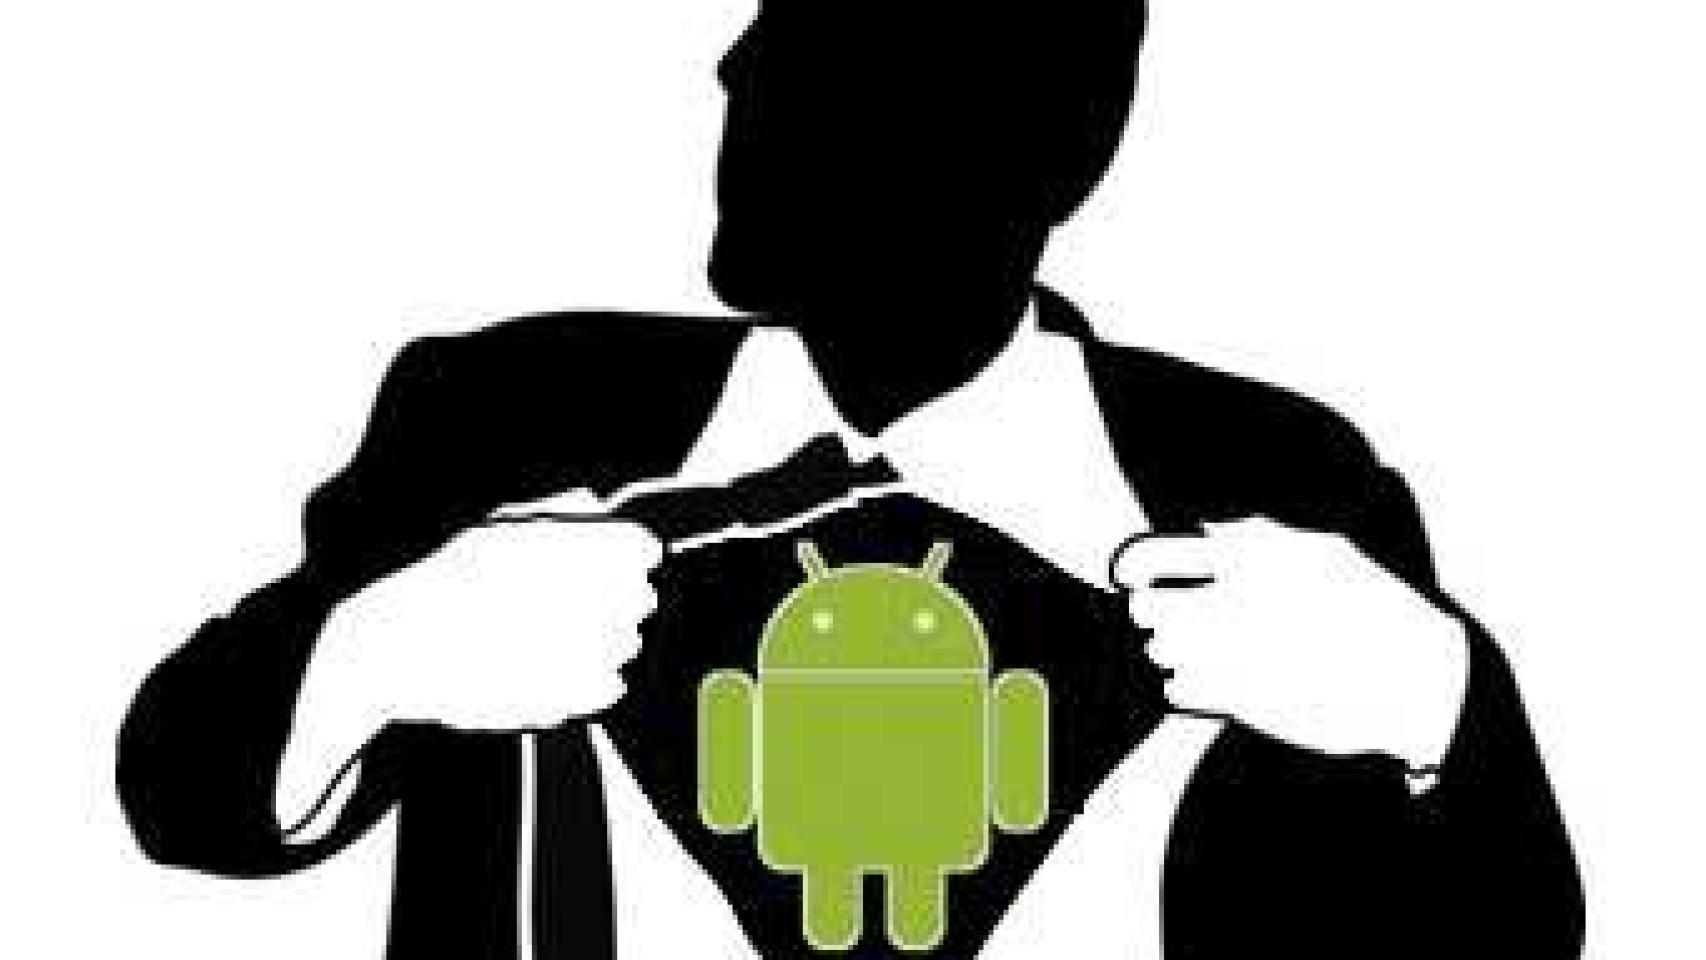 Situaciones de peligro, ¡Android al rescate!